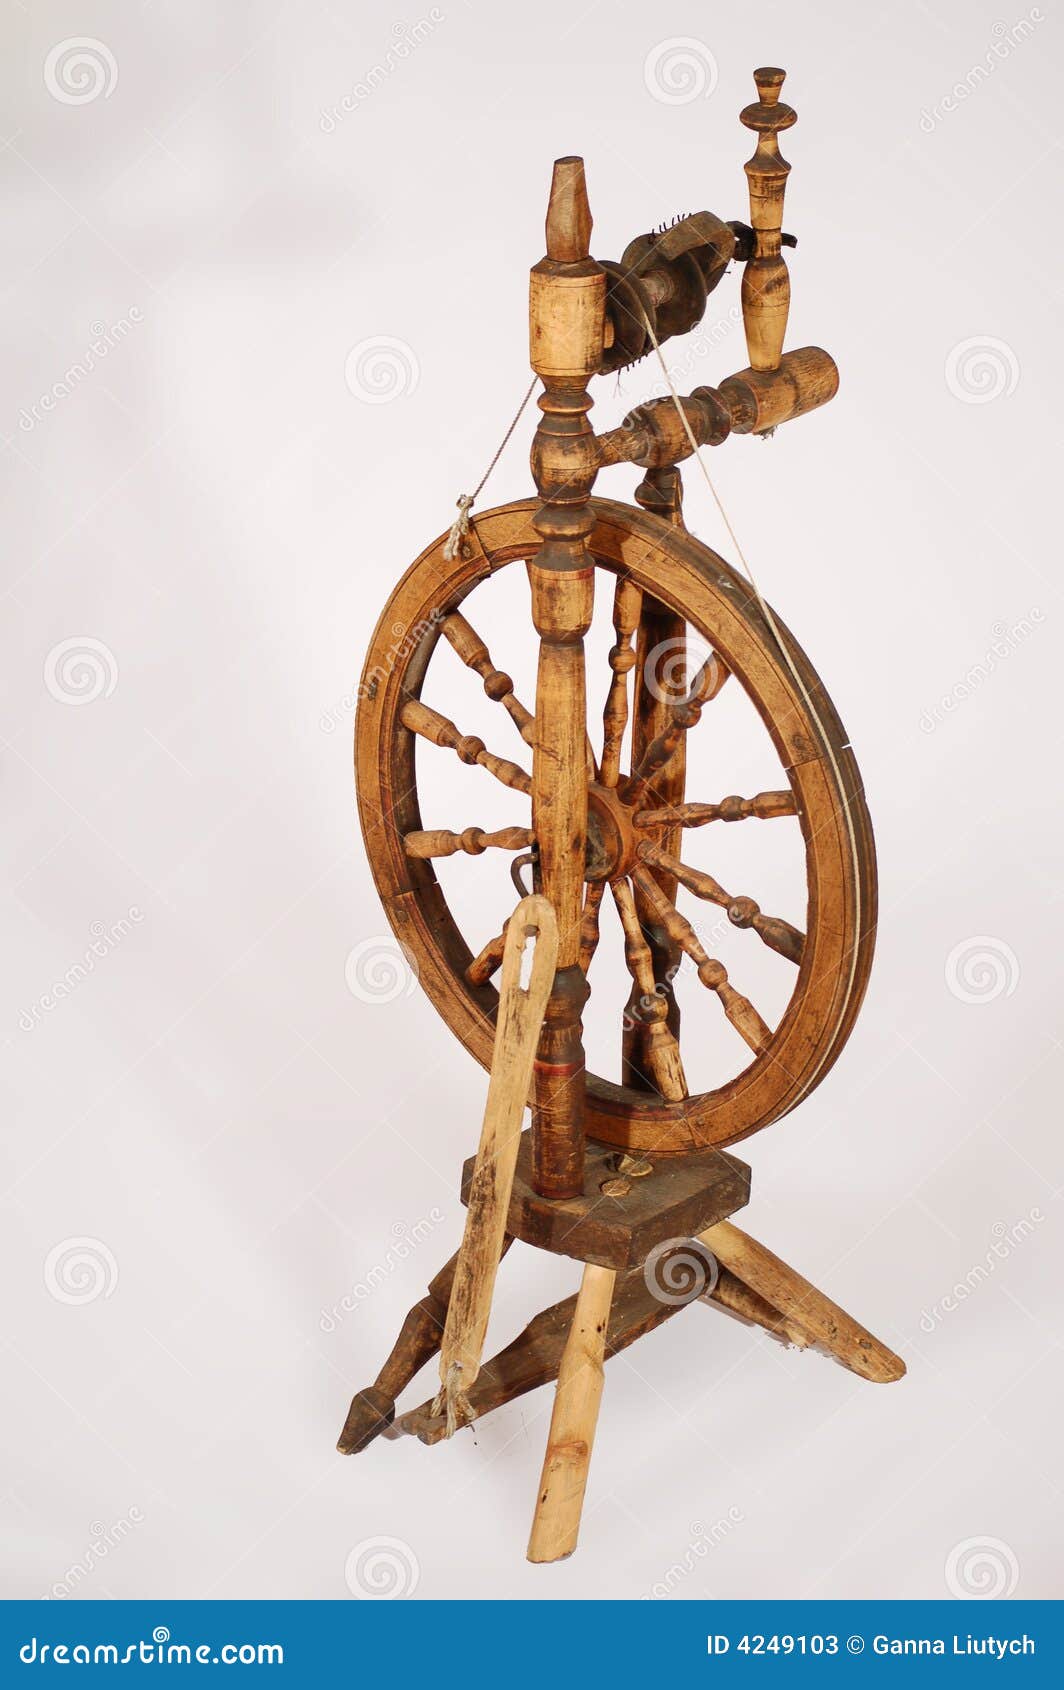 Подвижная часть прялки 8 букв. Самопрялка деревянная с колесом. Прялка деревянная. Ручная колесная прялка. Прядильный станок с колесом.